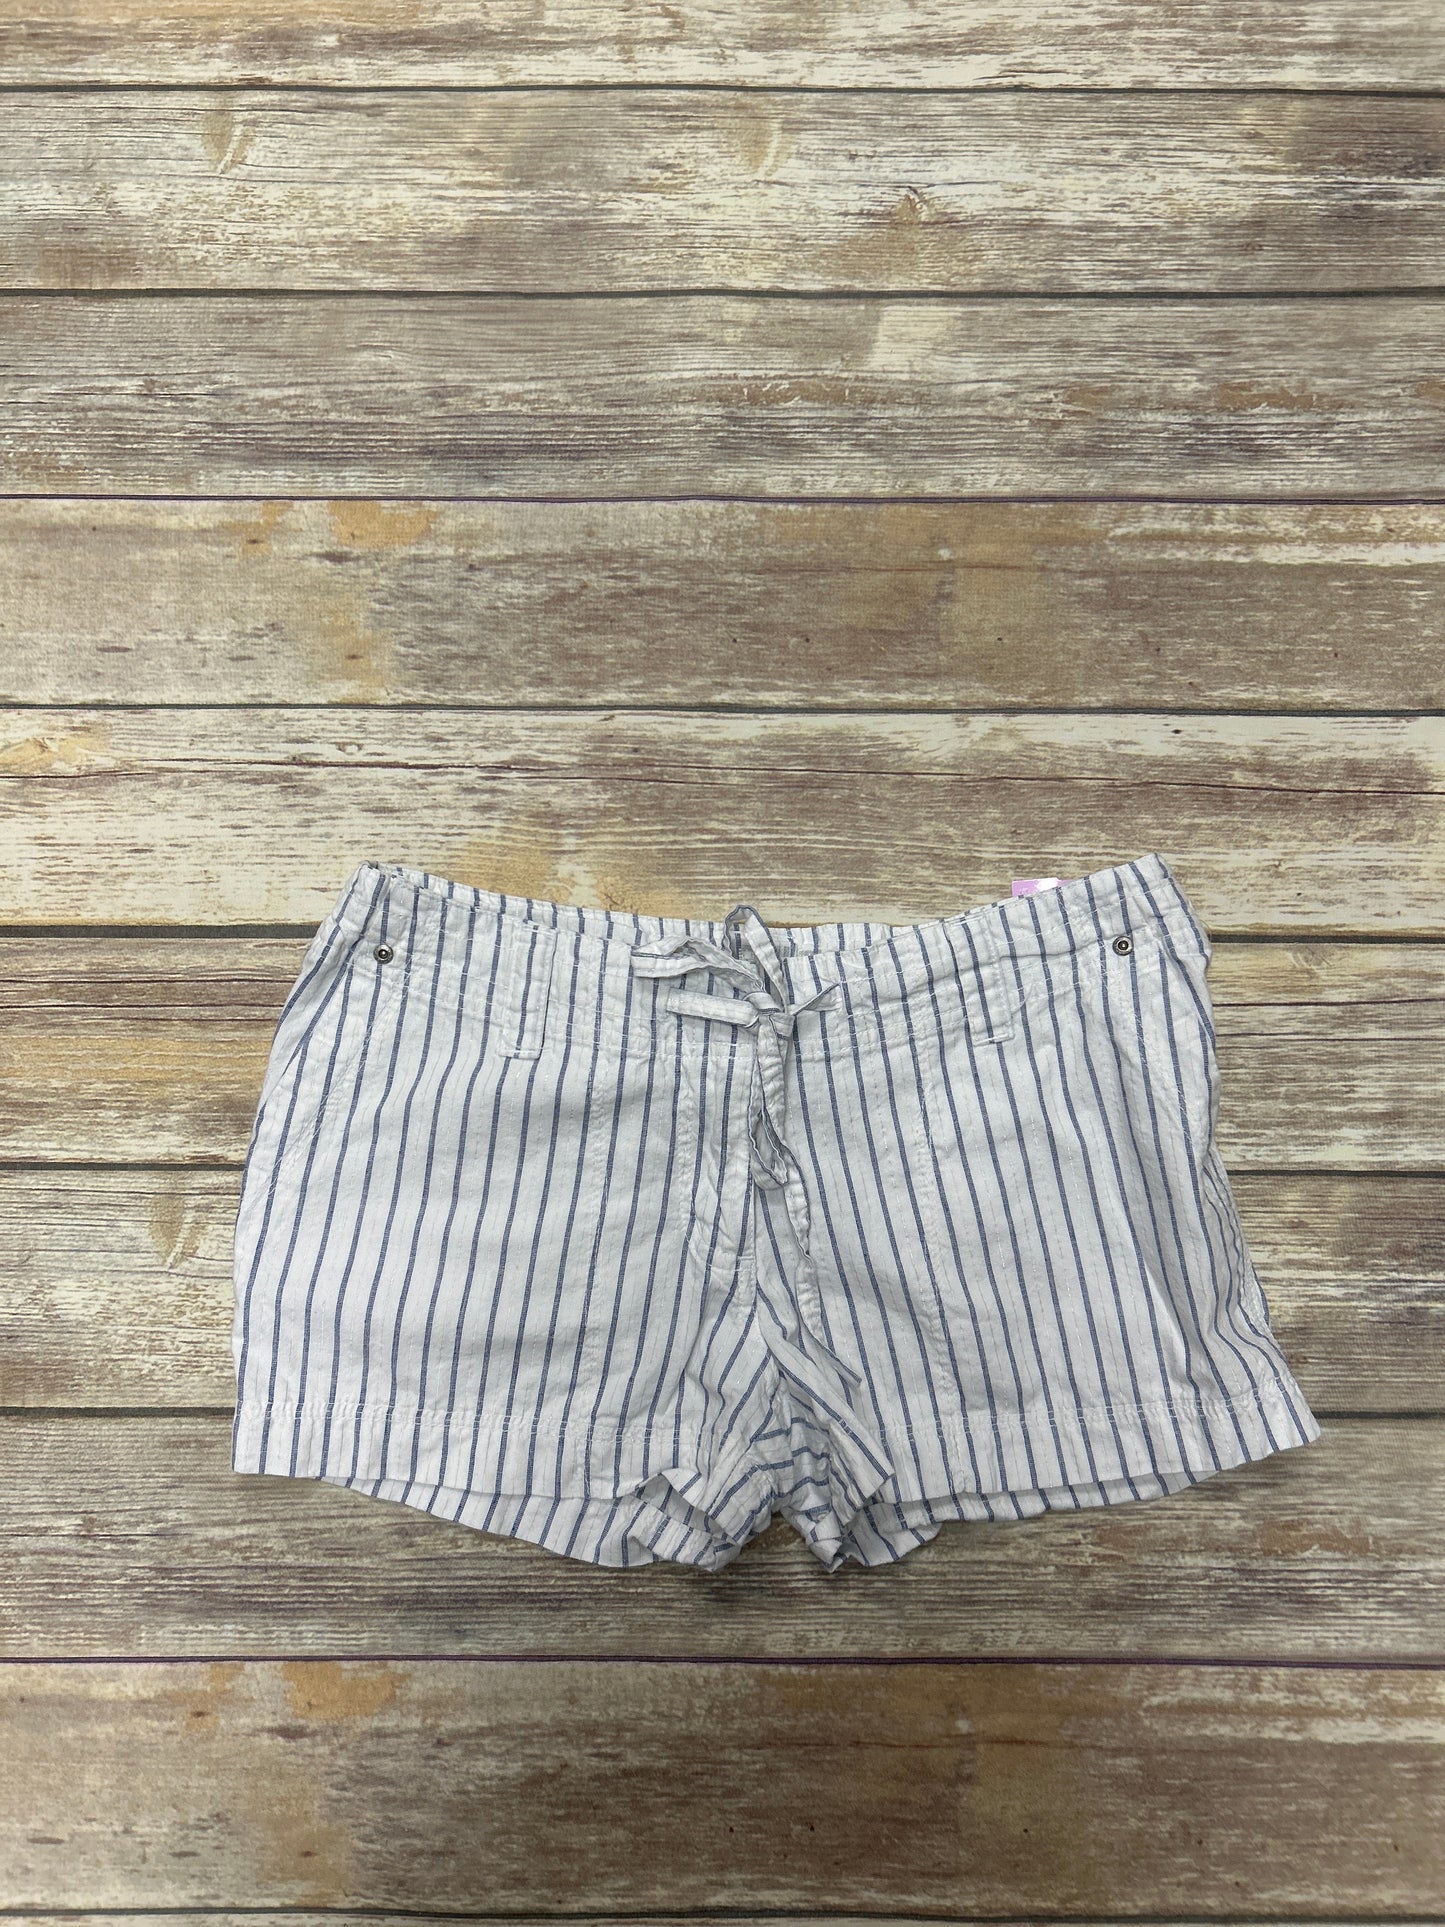 Striped Pattern Shorts Ashley, Size L